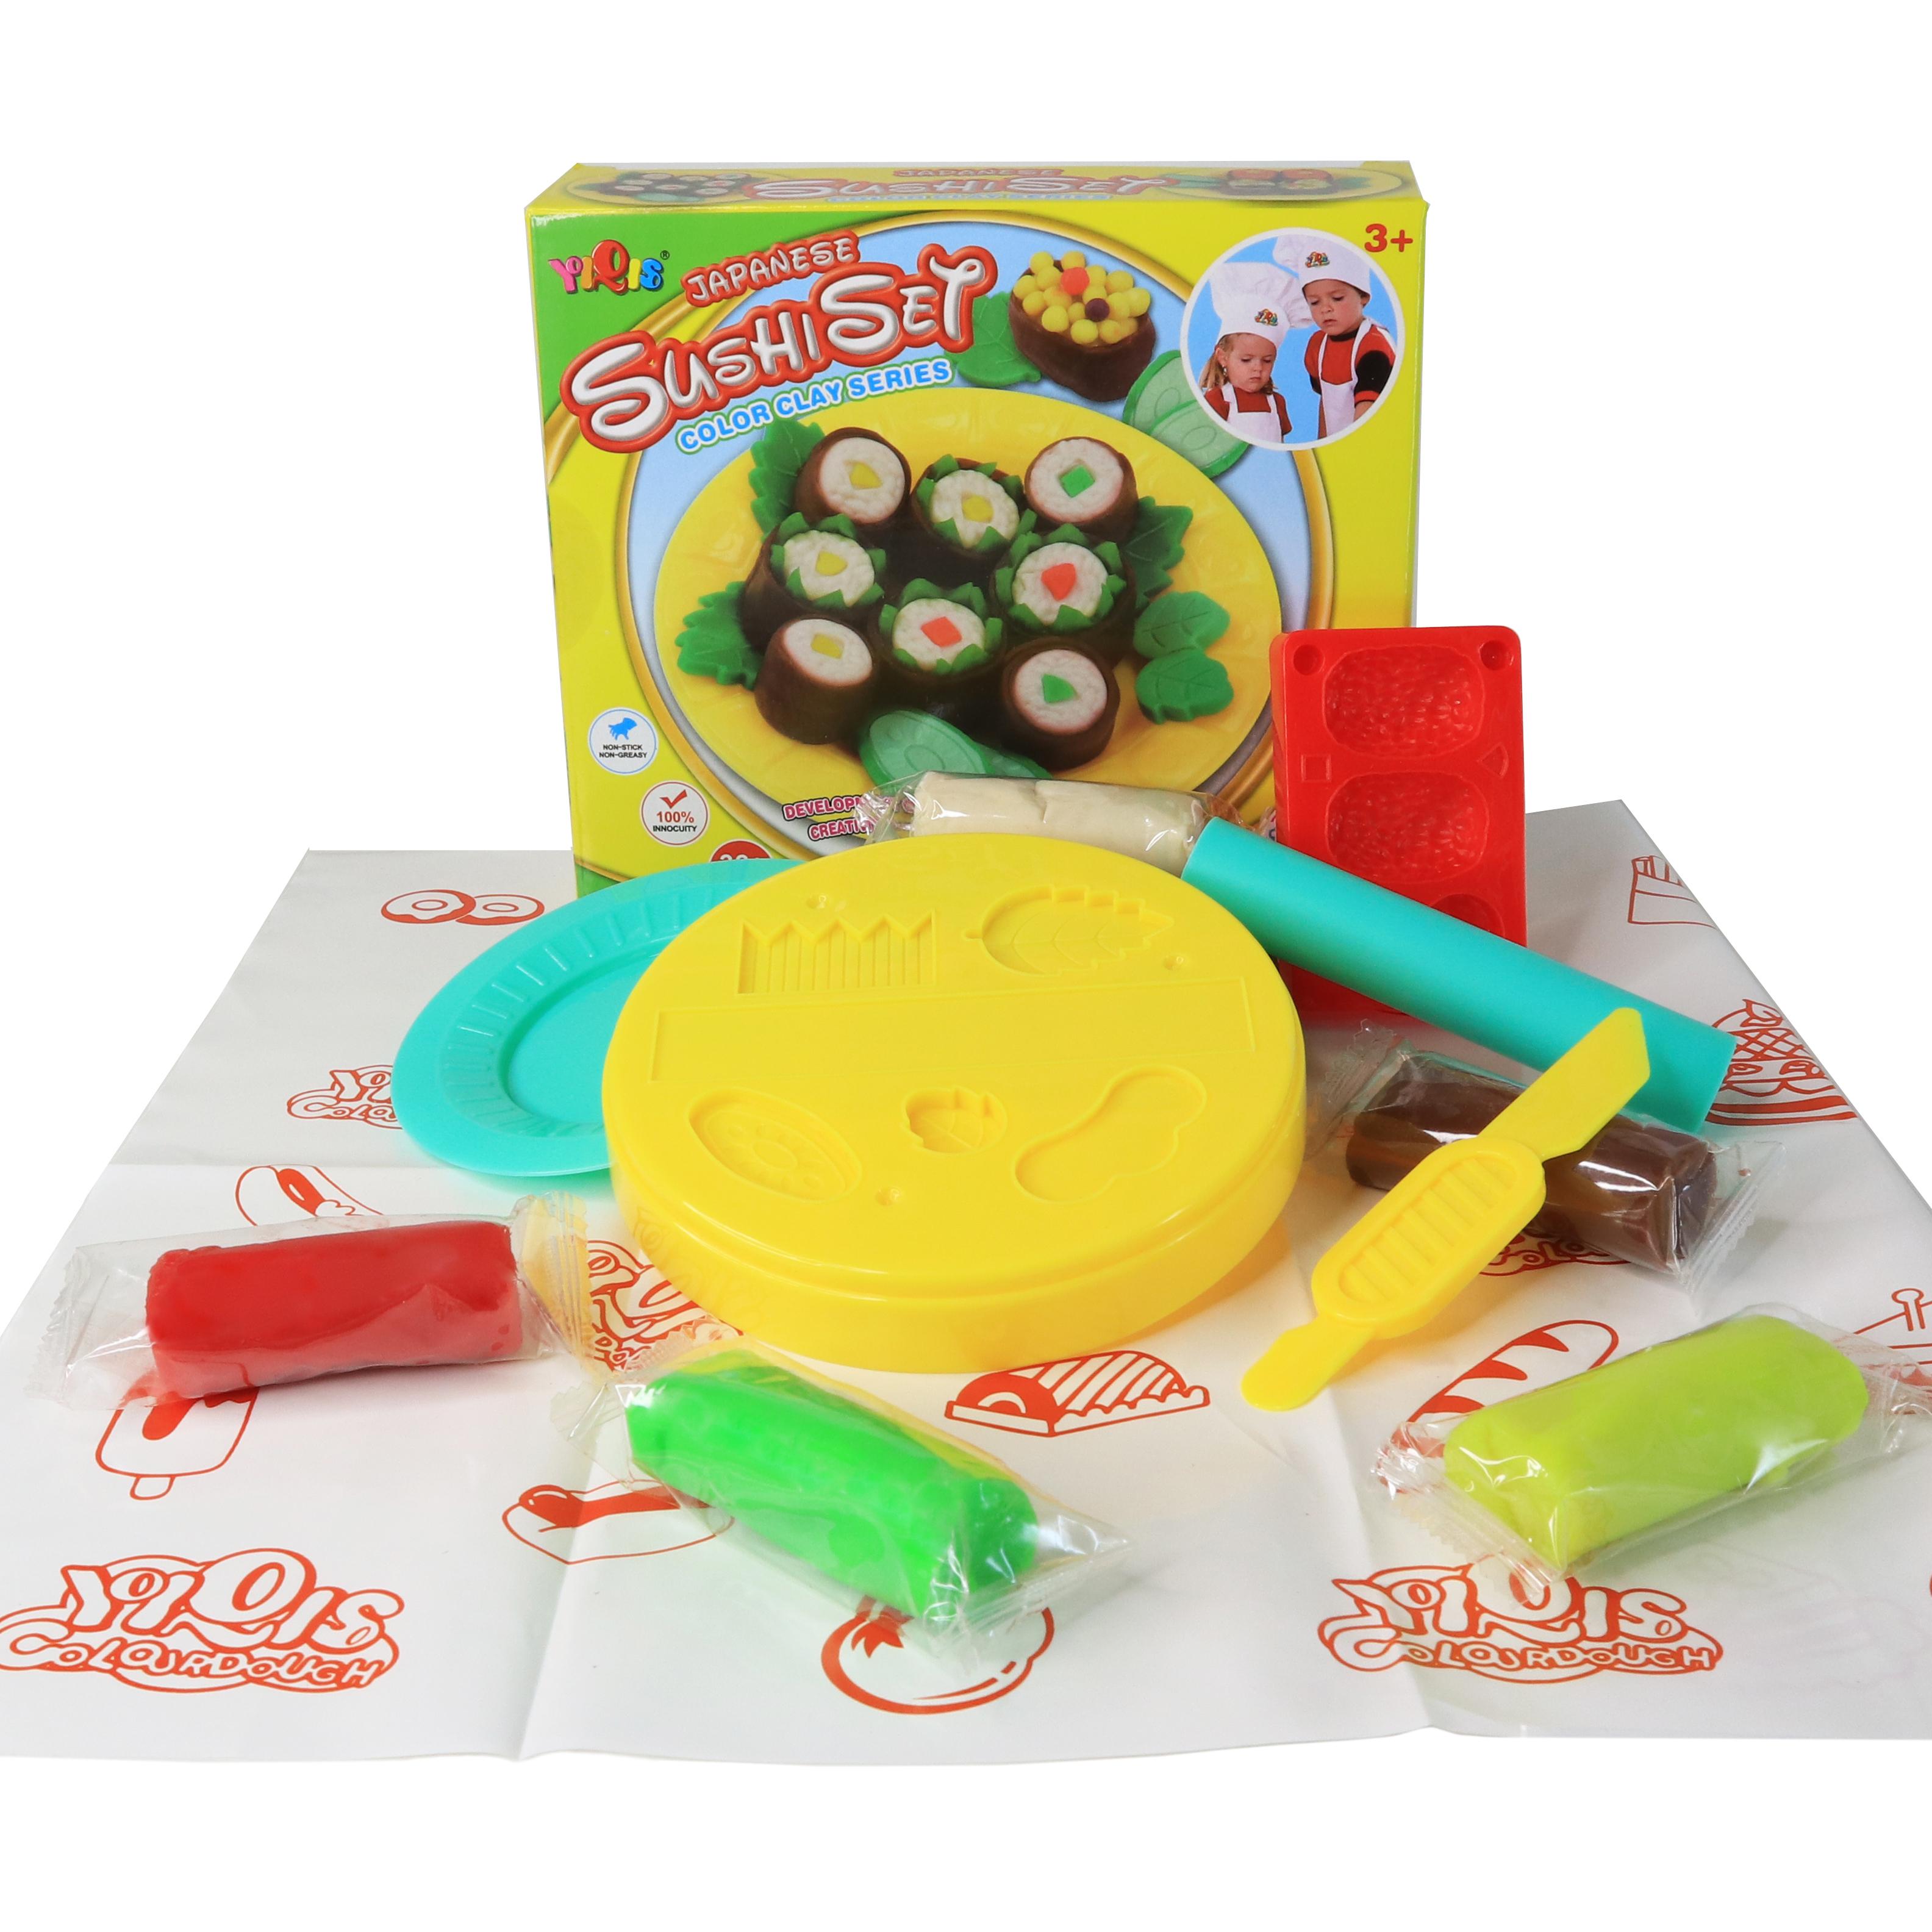 Набор пластилина для лепки CG ALENTO Playdough Sushi Set